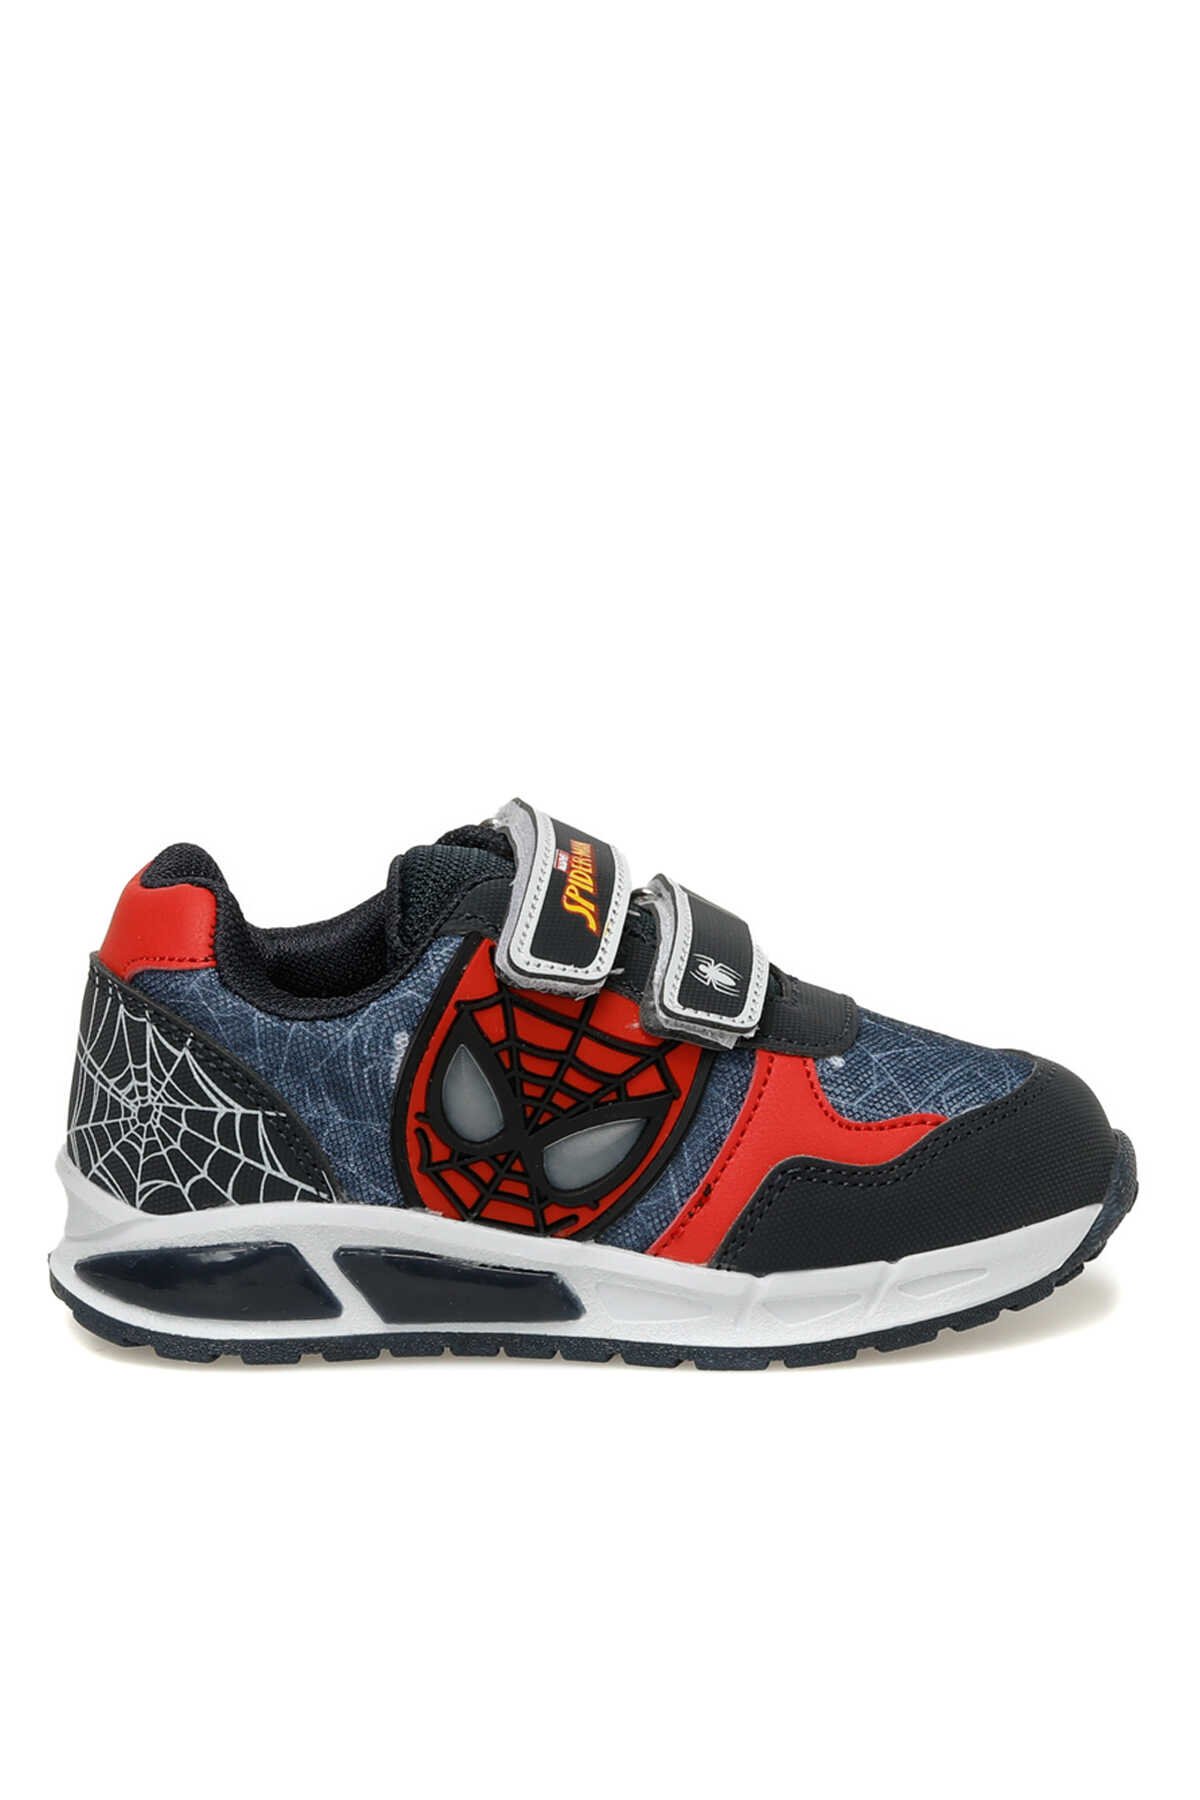 Spider Man - Spider Man 3P MERVI. P3FX Sneaker Erkek Çocuk Ayakkabı Lacivert